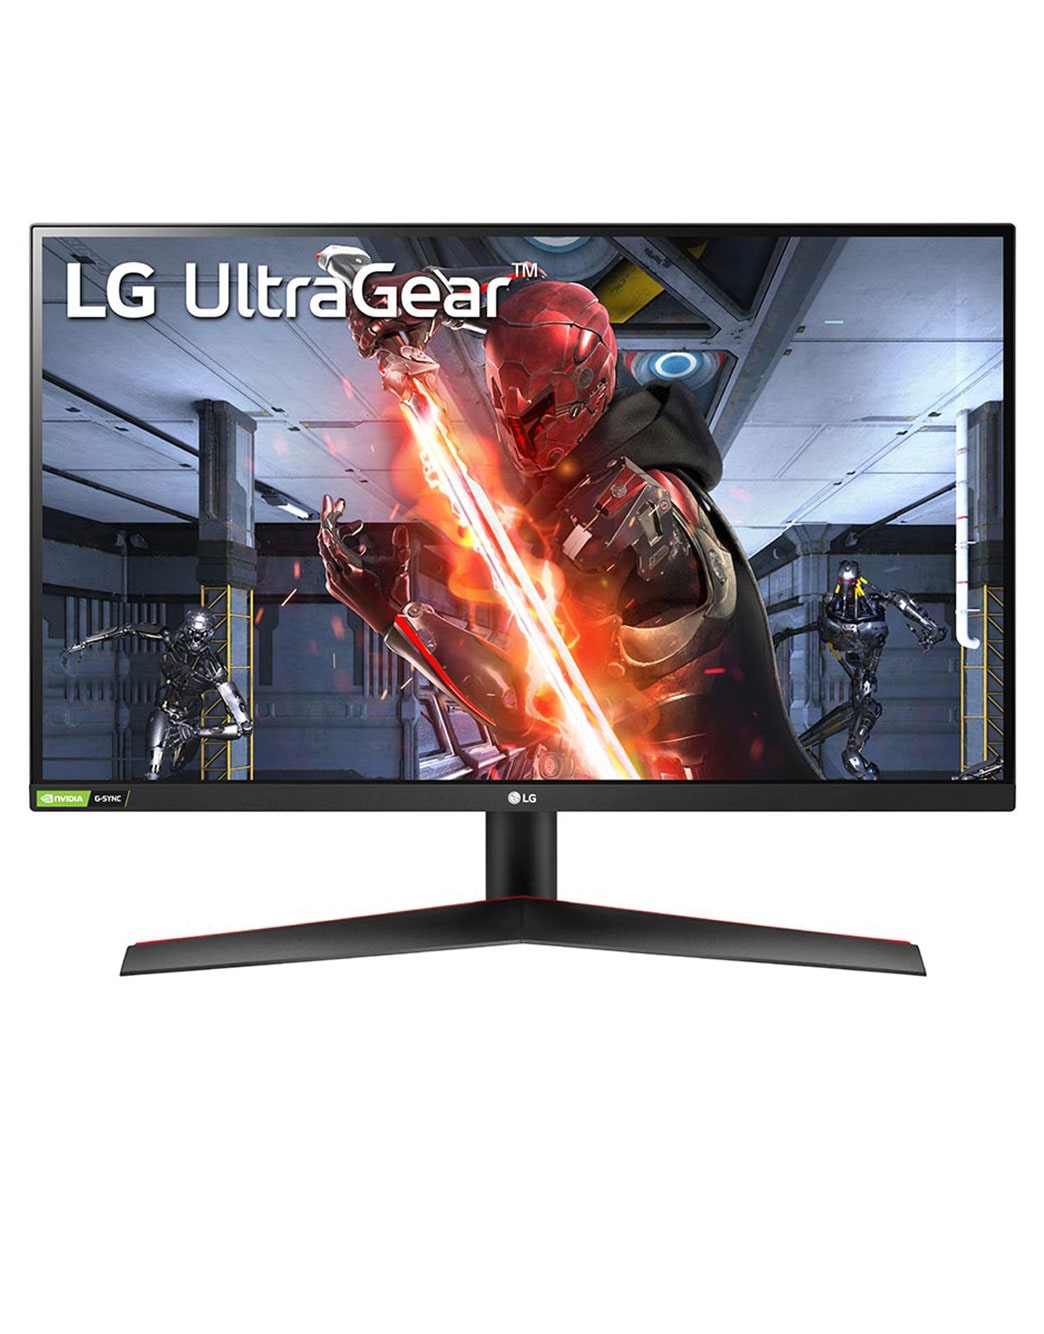 Hãy khám phá màn hình siêu phẳng LG UltraGear với độ phân giải cao và khả năng hiển thị mượt mà. Đảm bảo sẽ làm dịu mắt và cho trải nghiệm chơi game và làm việc thú vị hơn bao giờ hết.